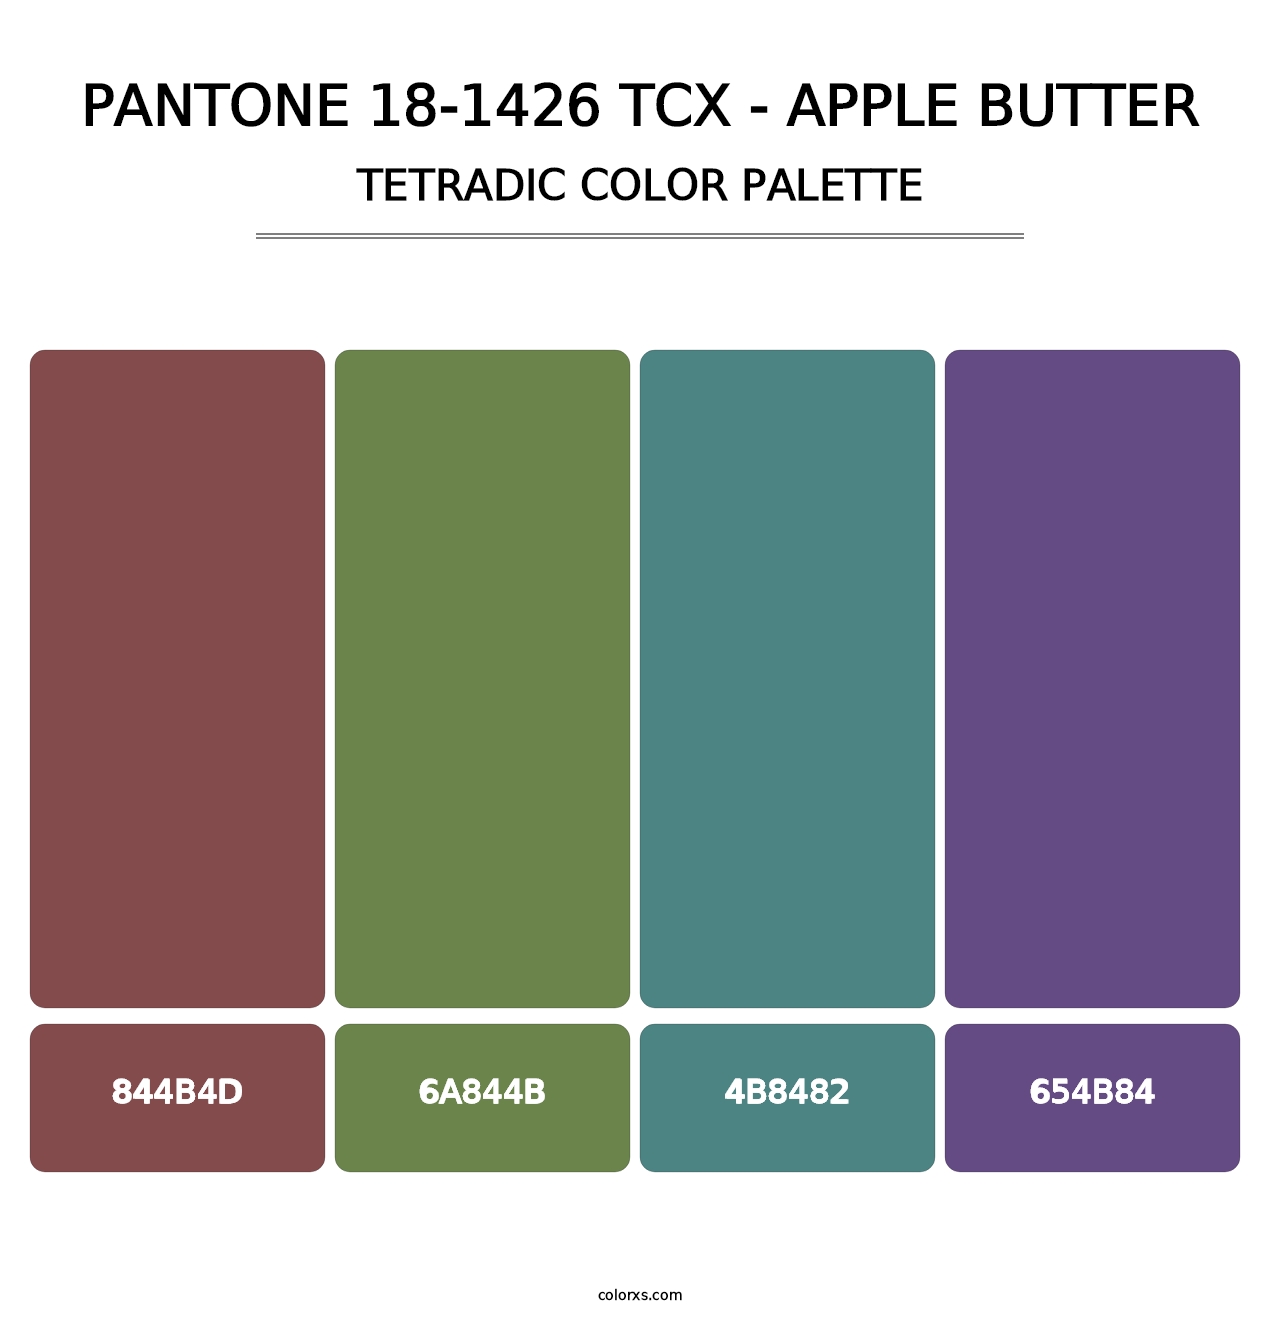 PANTONE 18-1426 TCX - Apple Butter - Tetradic Color Palette